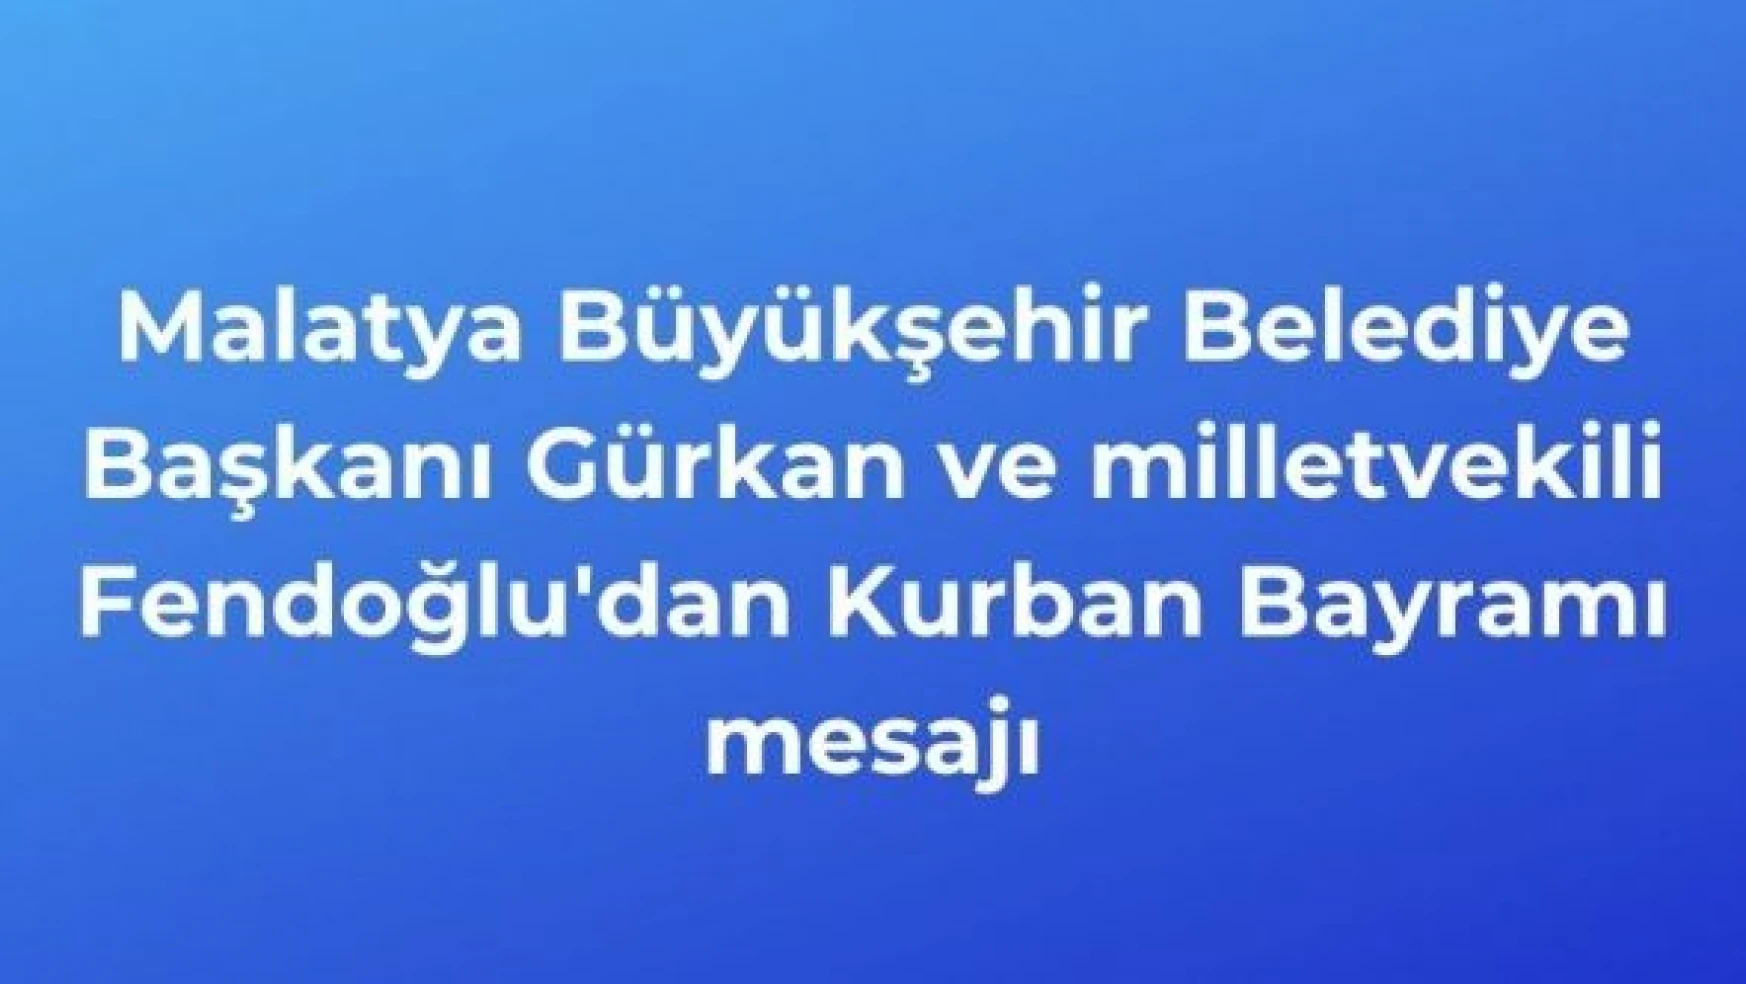 Malatya Büyükşehir Belediye Başkanı Gürkan ve Fendoğlu'dan bayram mesajı